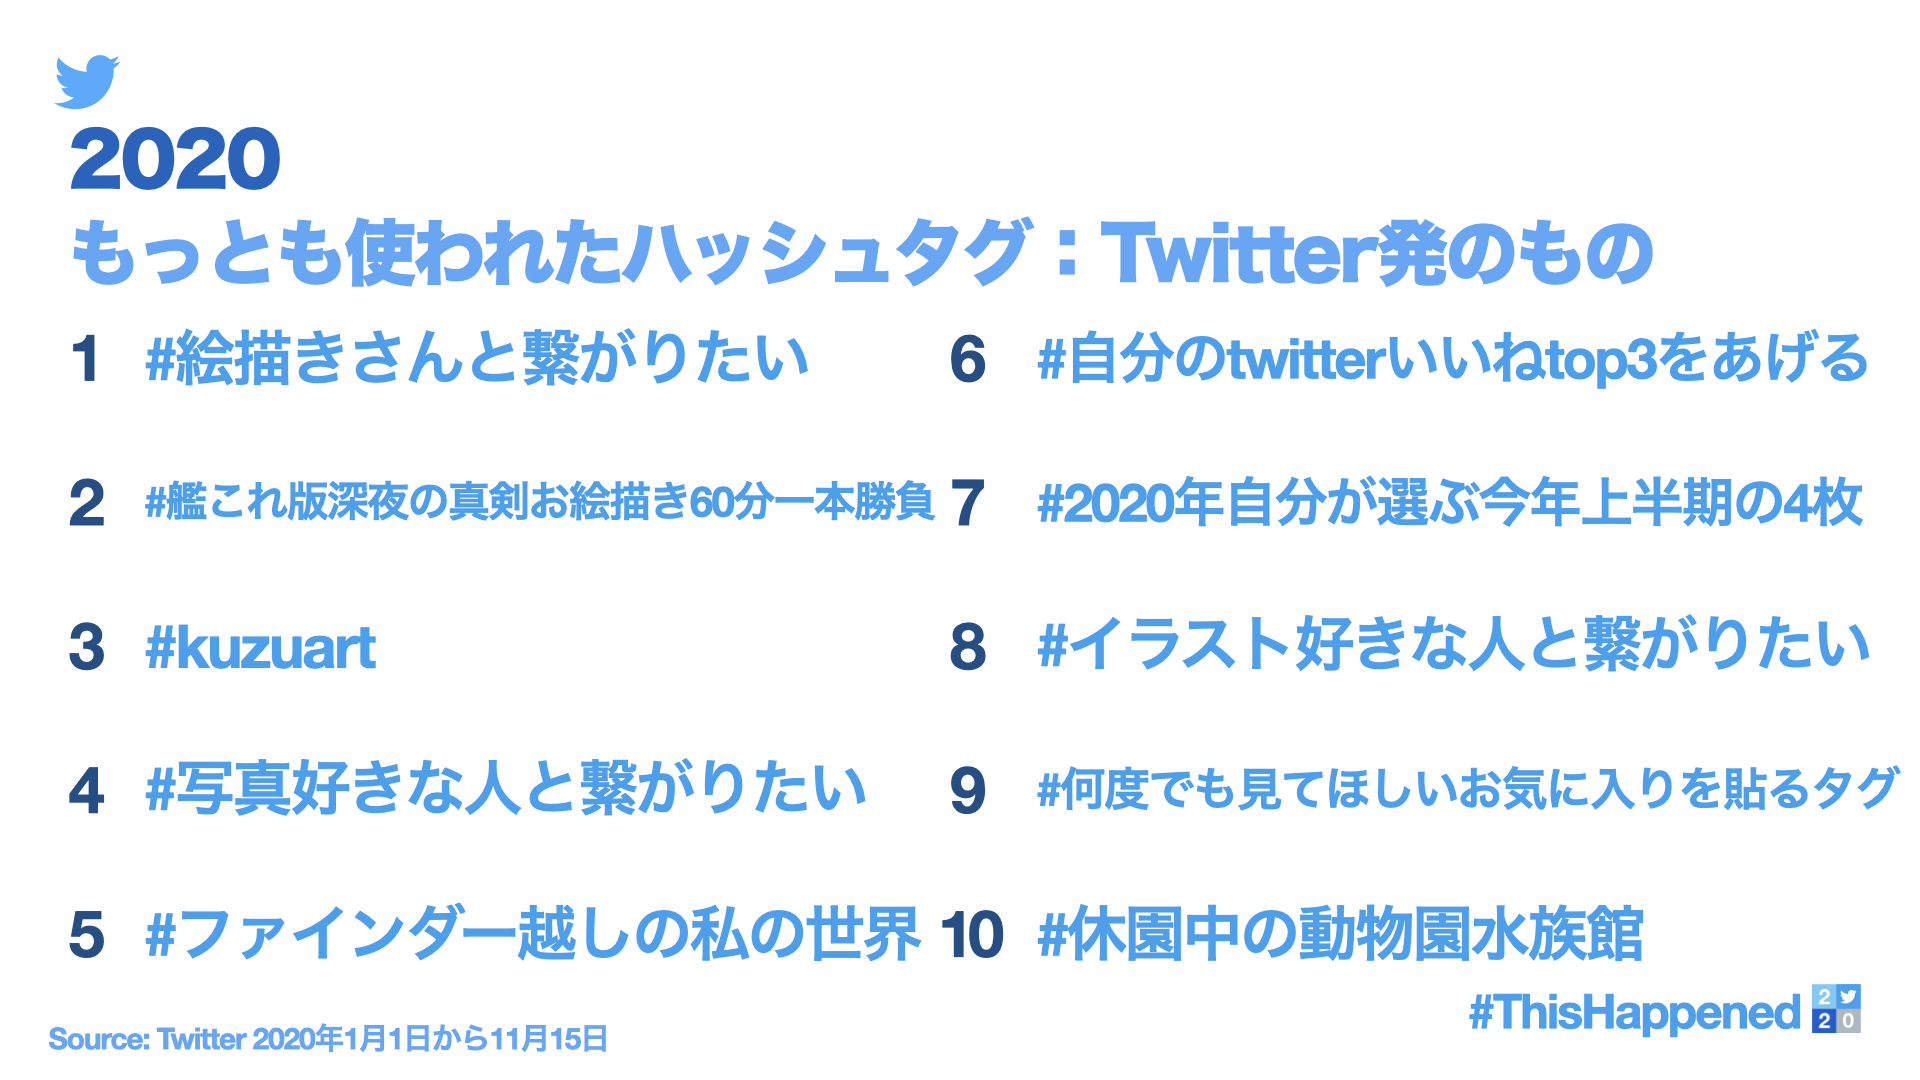 Twitter Japan 国内のツイートでもっとも使われた ミュージック と ゲーム のアカウントとハッシュタグはこちらです Thishappened 今年のできごと T Co Ryg7dyz14x Twitter